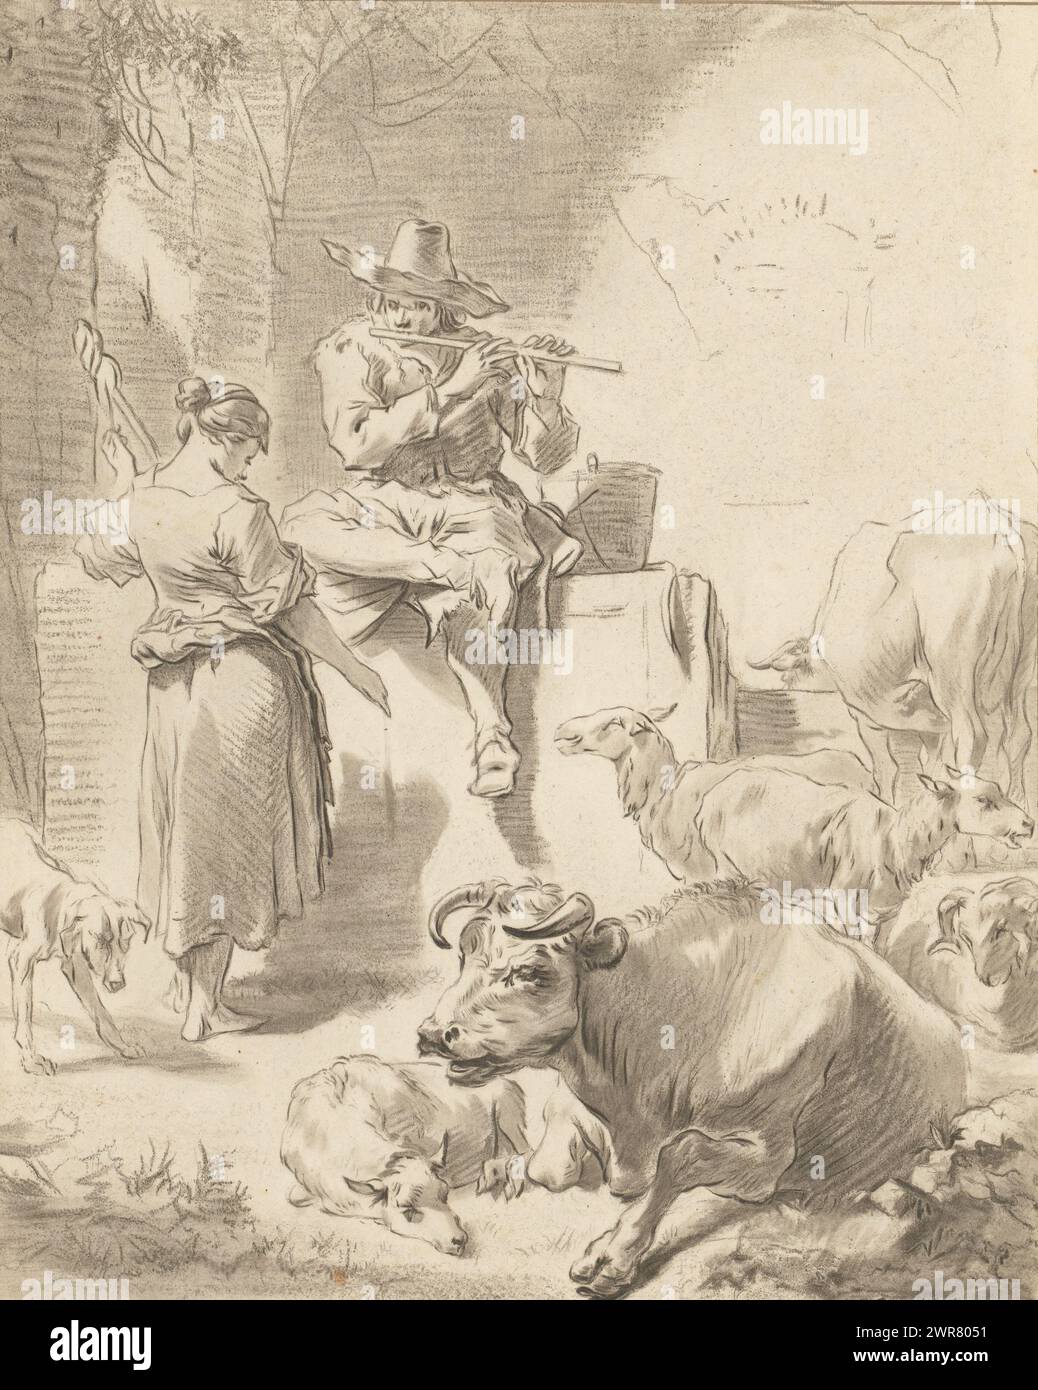 Berger jouant de la flûte et berger ronronnant, Un berger est assis sur un rocher et joue de la flûte. À côté de lui se tient une bergère qui ronronne. Les chèvres et les vaches entourent le couple. En dessous de l'impression est un dessin au crayon d'un homme avec un chapeau. L'impression est lâche dans un album, voir page 139., imprimeur : Jurriaan Cootwijck, après dessin par : Nicolaes Pietersz Berchem, Amsterdam, 1724 - 1798, papier, hauteur 248 mm × largeur 198 mm, impression Banque D'Images